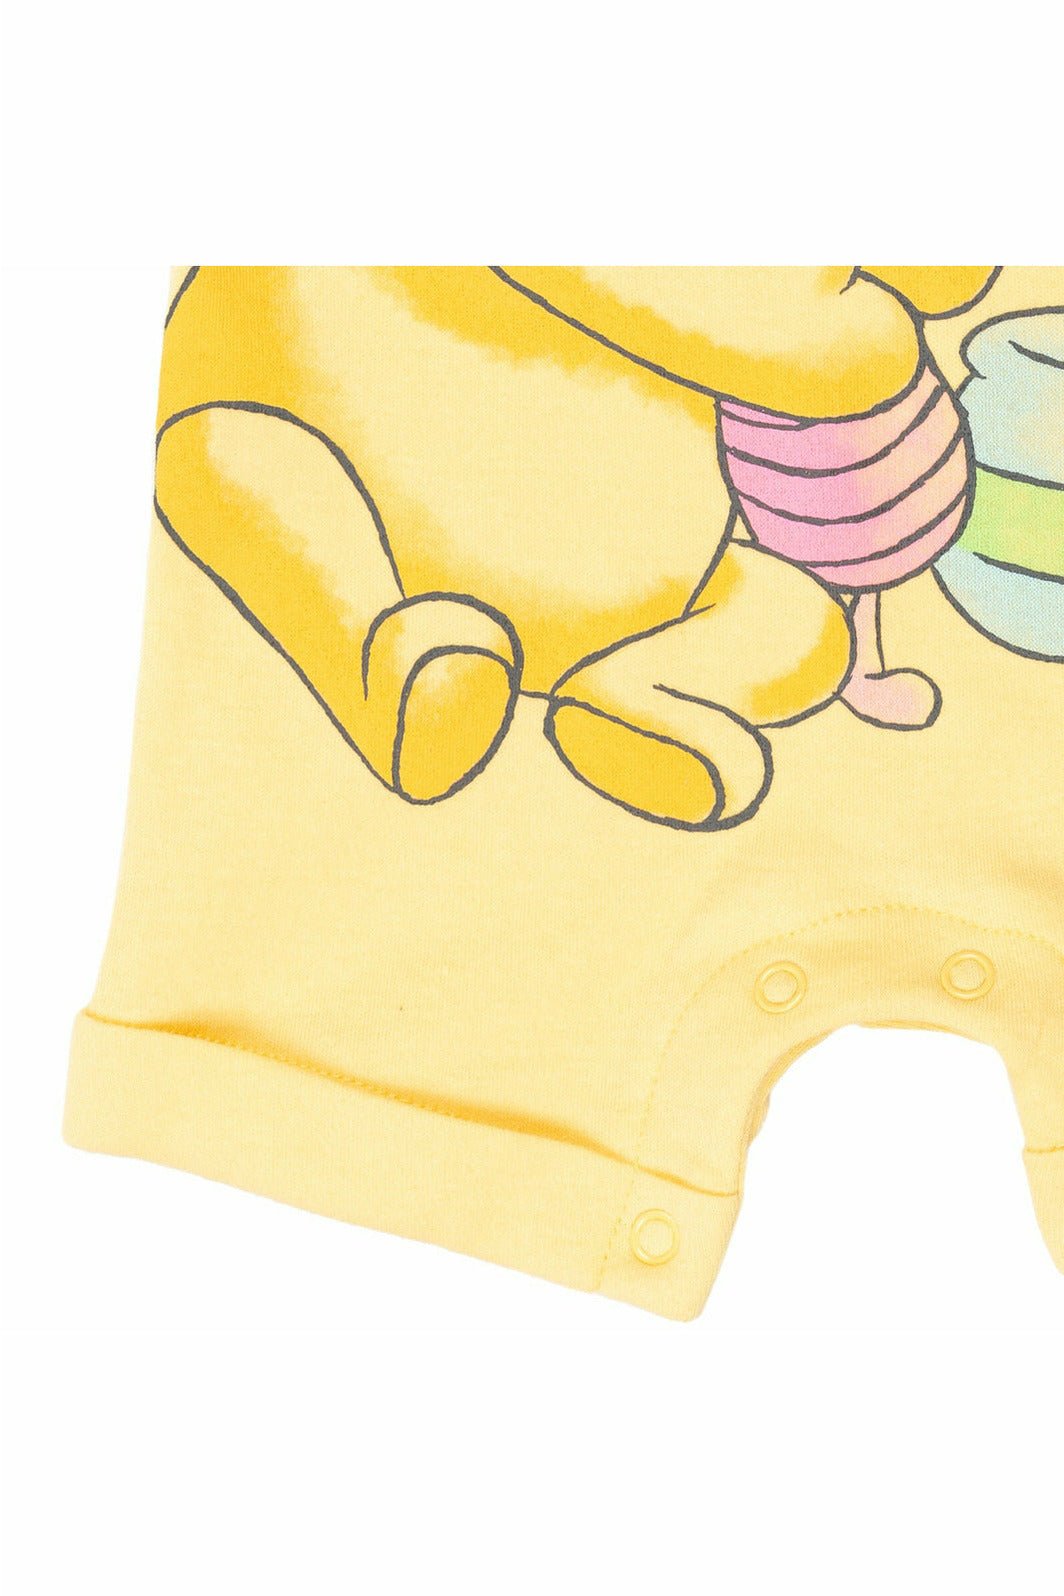 Winnie the Pooh Sleeveless Romper & Headband - imagikids